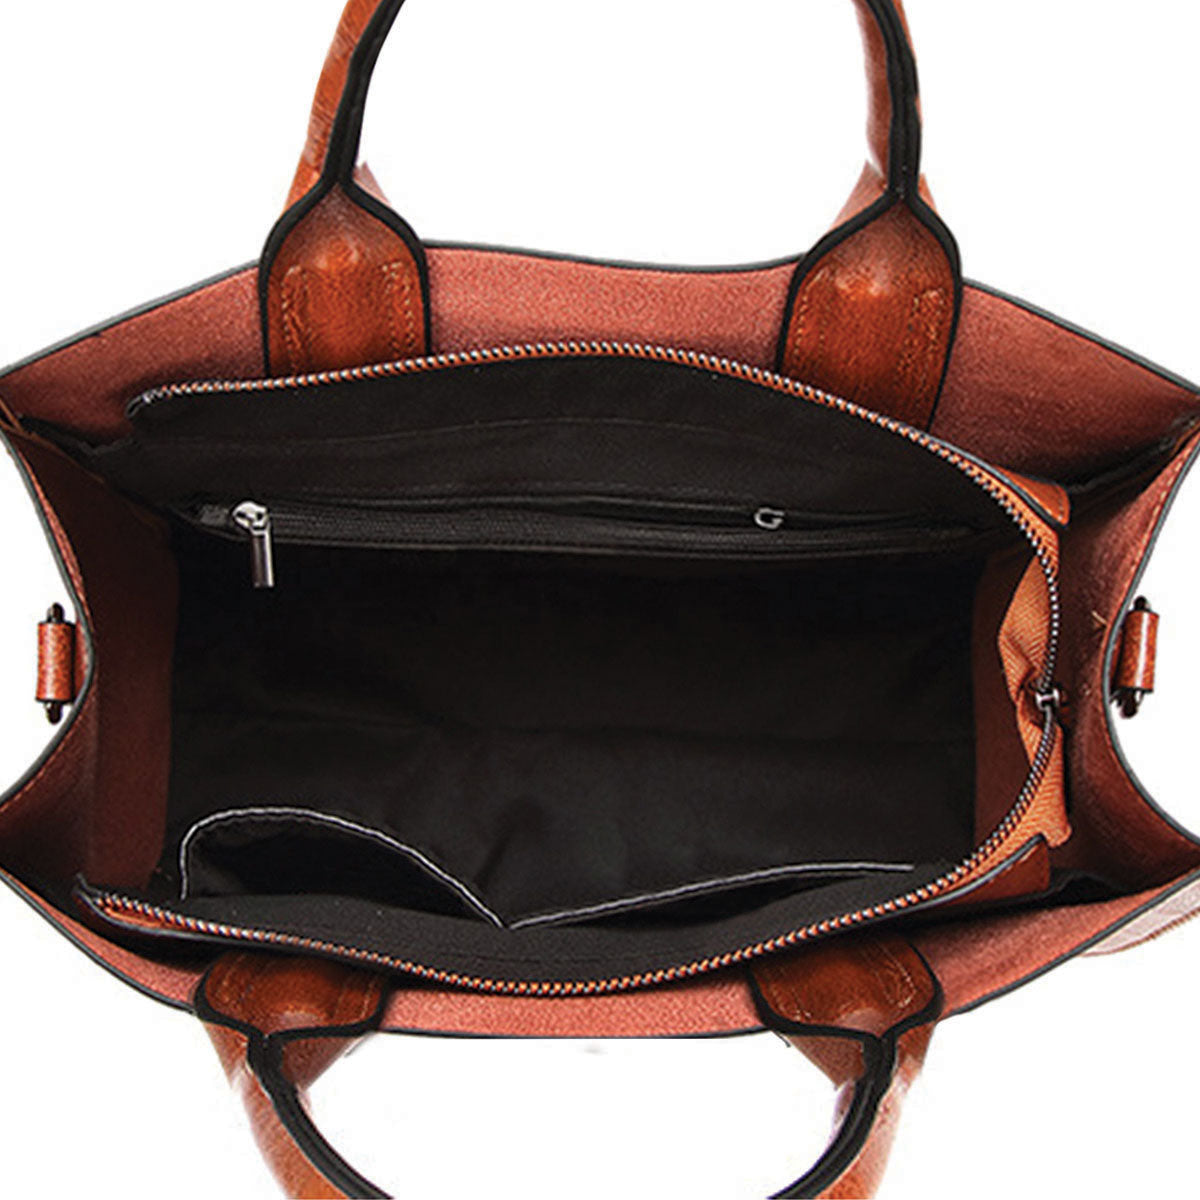 Your Best Companion - Bearded Collie Luxury Handbag V1